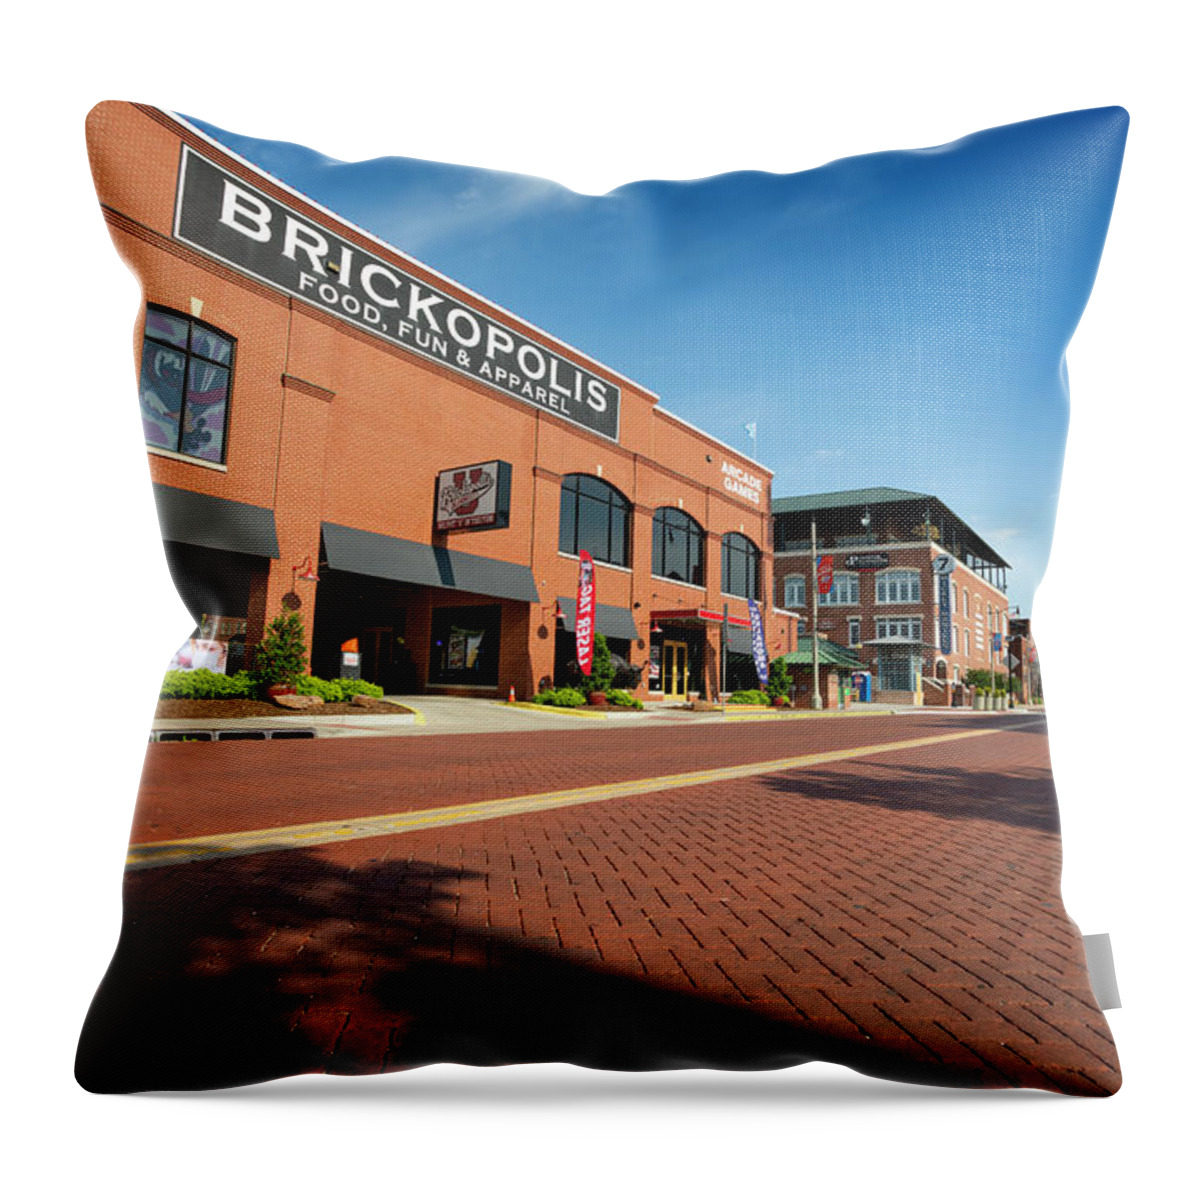 Oklahoma City Throw Pillow featuring the photograph Bricktown 22 by Ricky Barnard